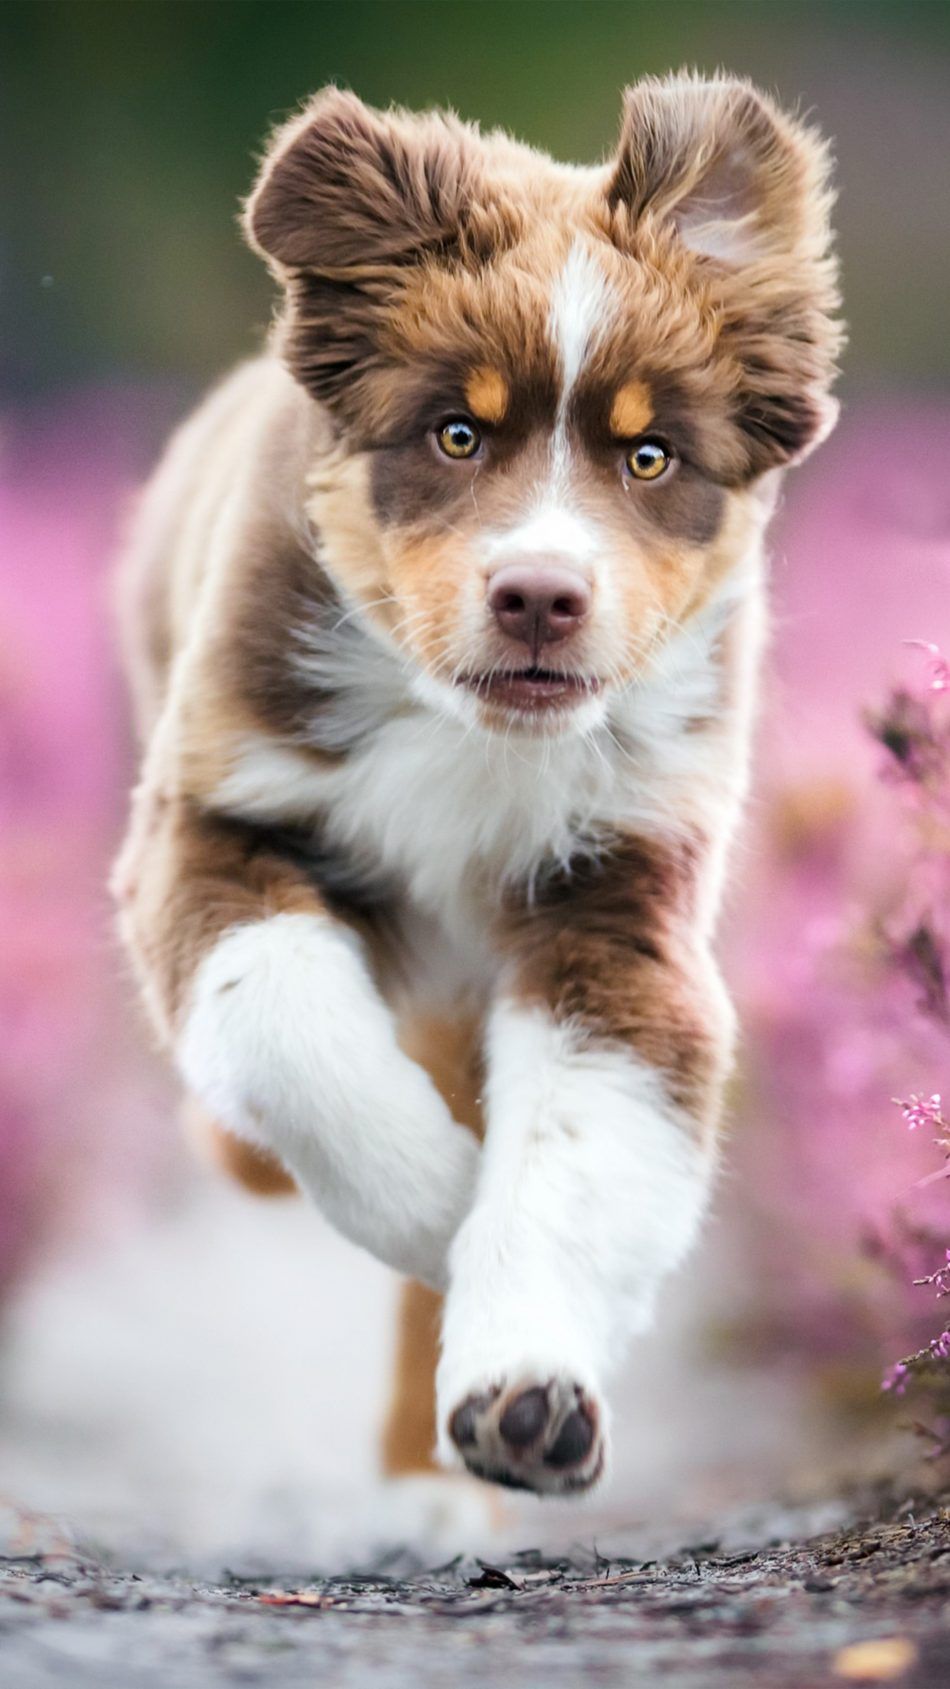 Australian Shepherd Puppy 4K Ultra HD Mobile Wallpaper. Cute animals, Cute dogs, Australian shepherd puppy